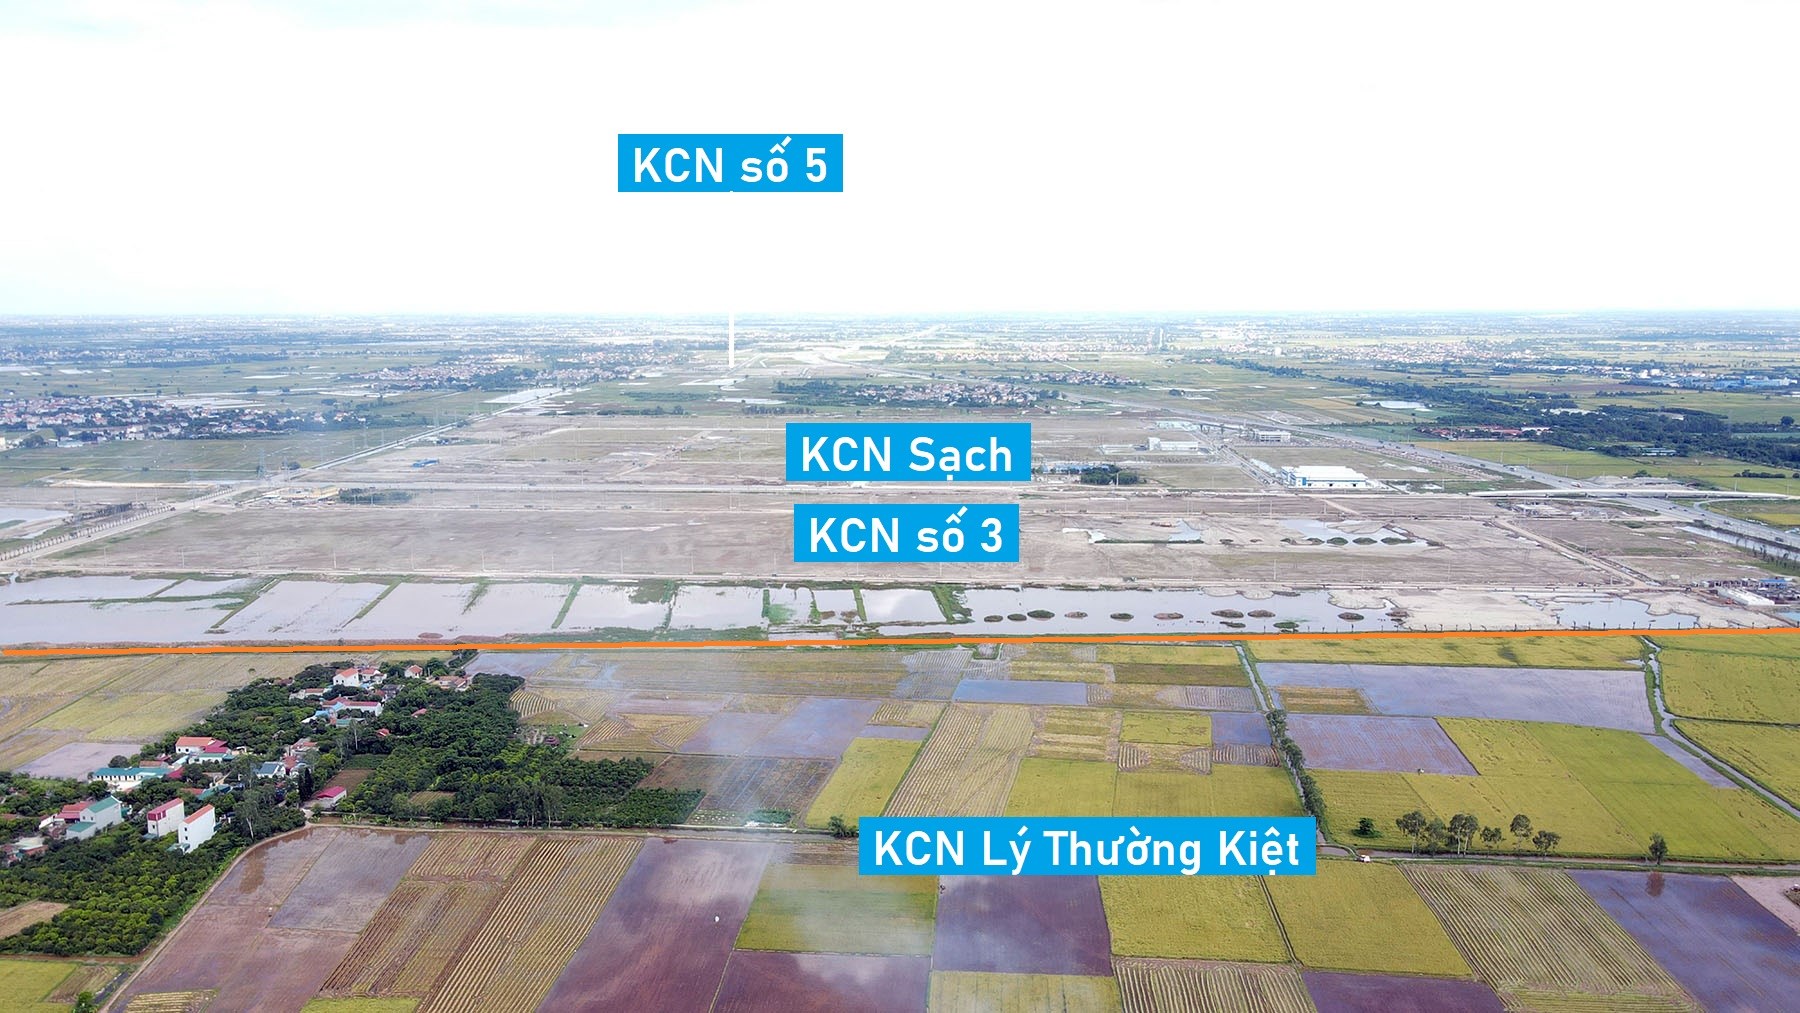 Toàn cảnh vị trí quy hoạch KCN Lý Thường Kiệt rộng 300 ha cạnh trạm thu phí Yên Mỹ, Hưng Yên